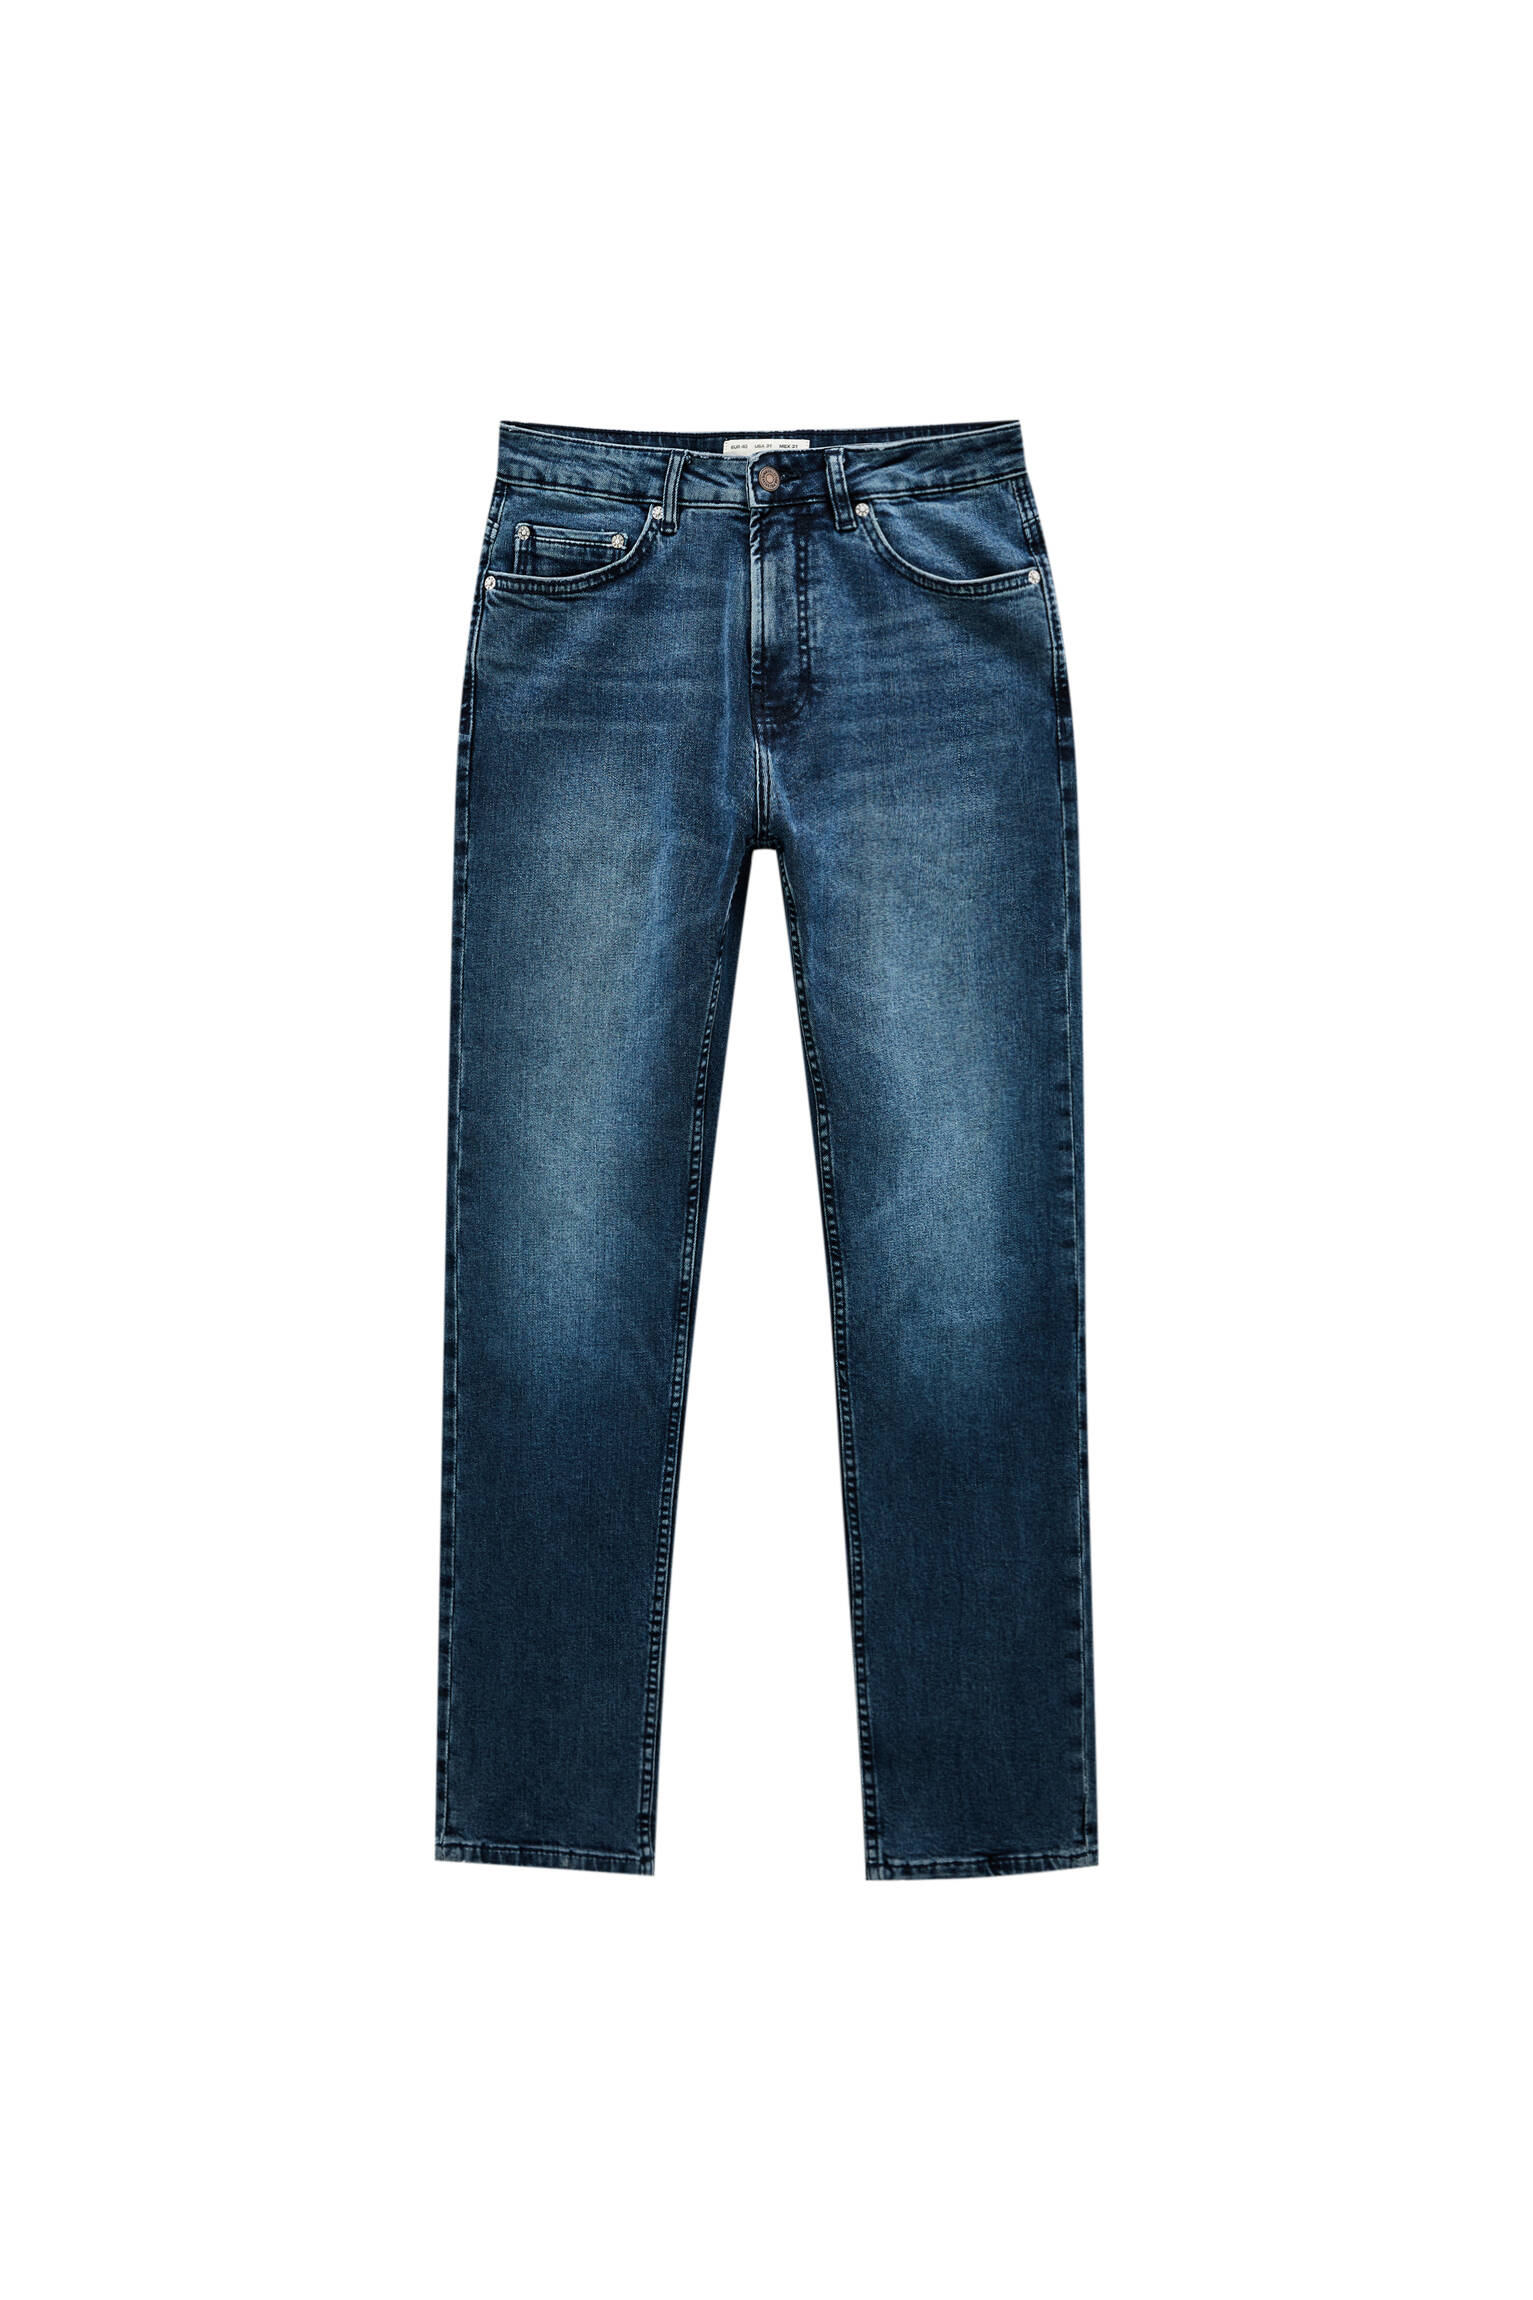 Pull&Bear homme jean slim décontracté bleu foncé avec cinq poches, passants de ceinture à la taille, fermeture Éclair et bouton. bleu lavande 38